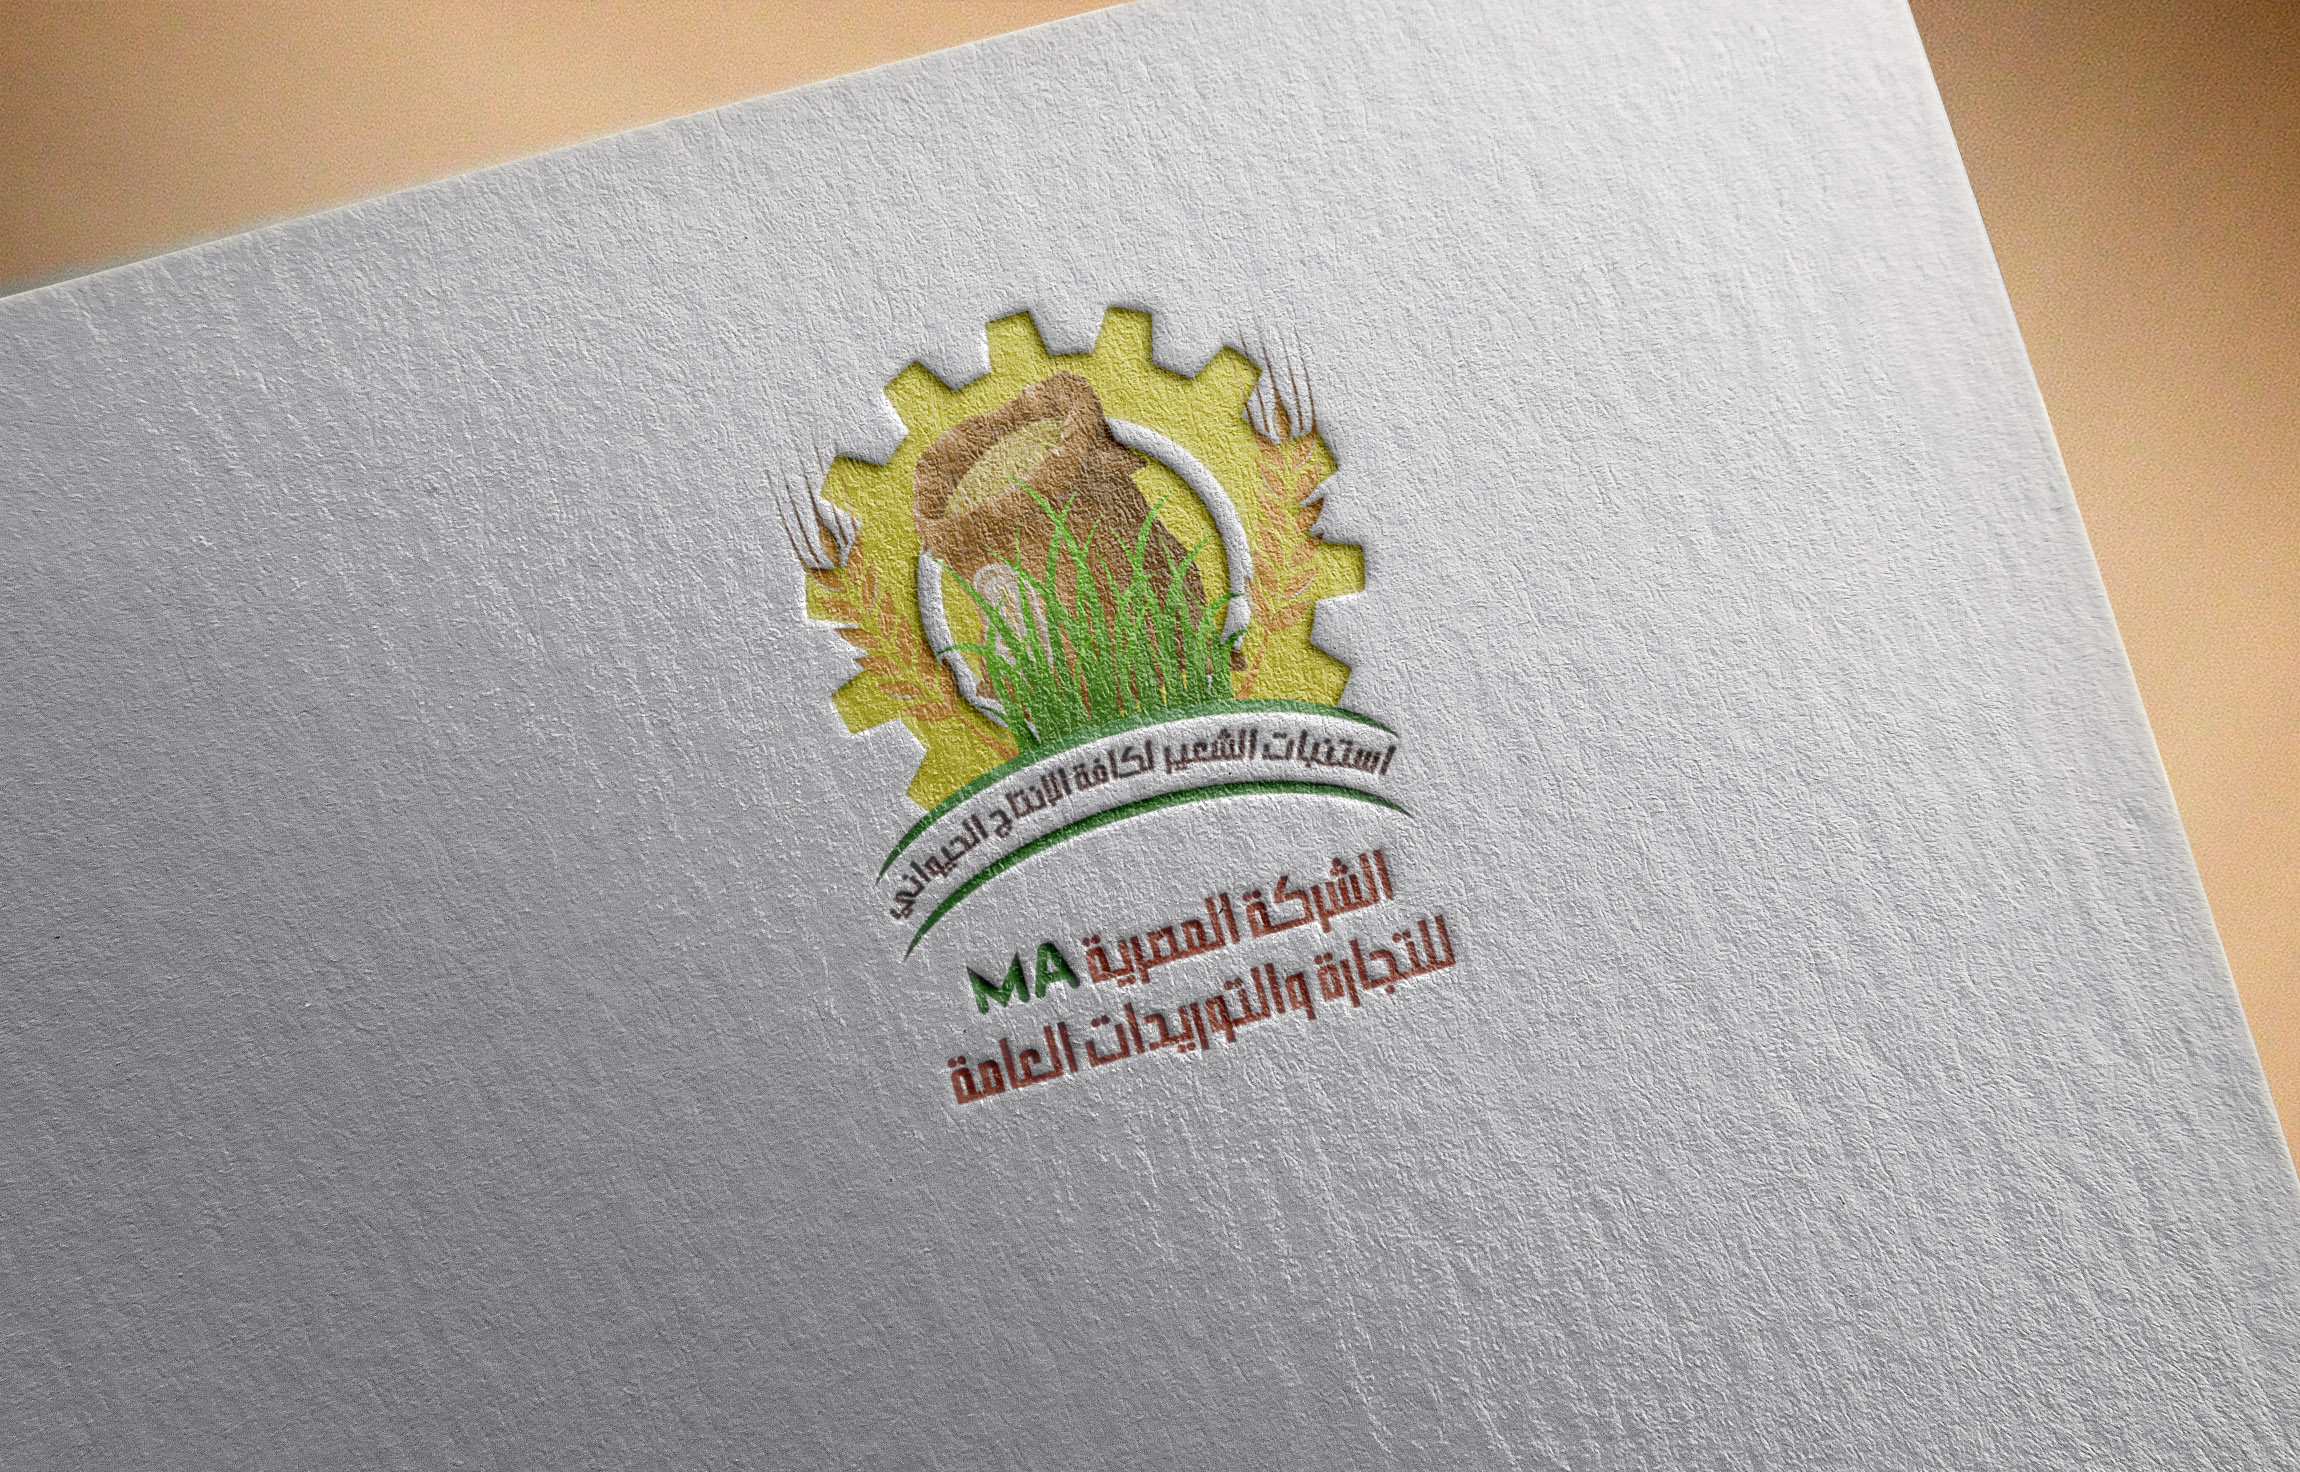 موكاب تصميم شعار الشركة المصرية MA لاستبات الشعير والإنتاج الحيواني 2